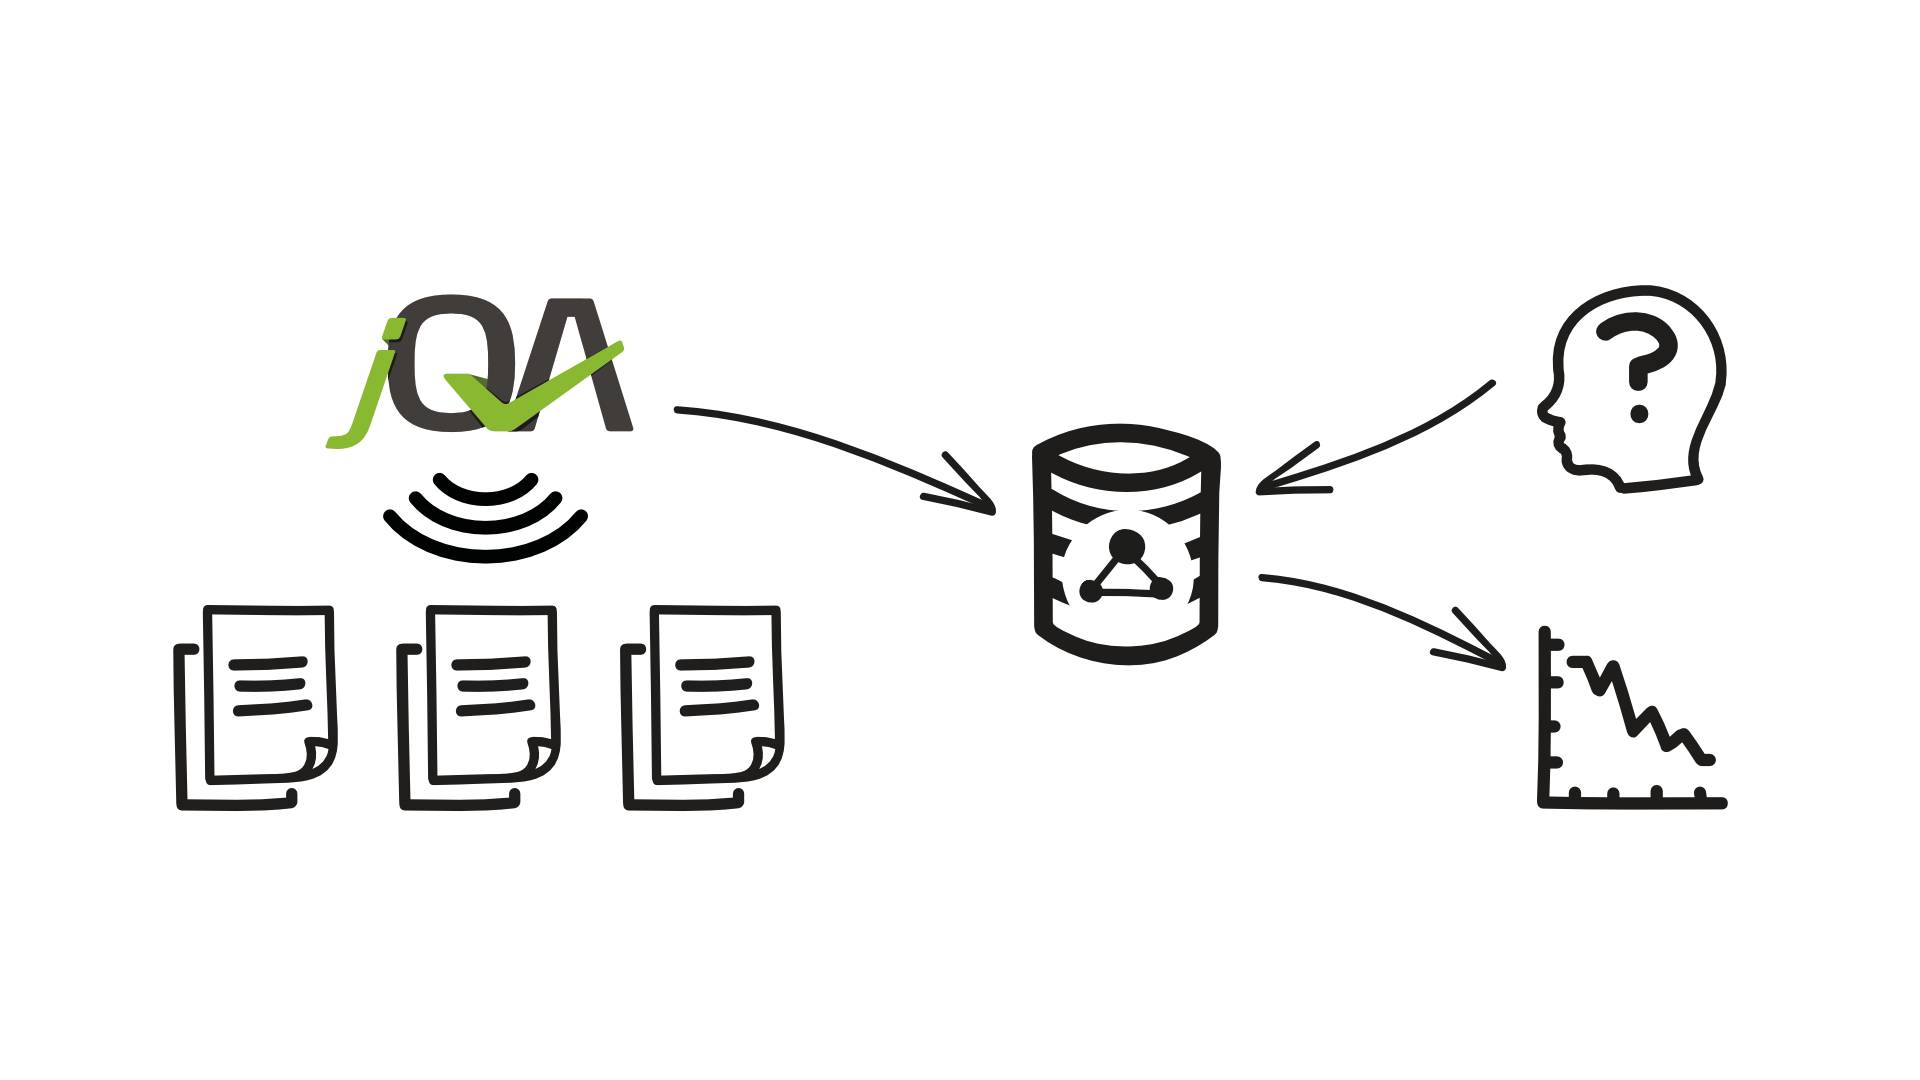 Abbildung 1:  Mit jQAssistant gescannte Softwareprojekte können sowohl manuell als auch automatisiert ausgewertet werden.